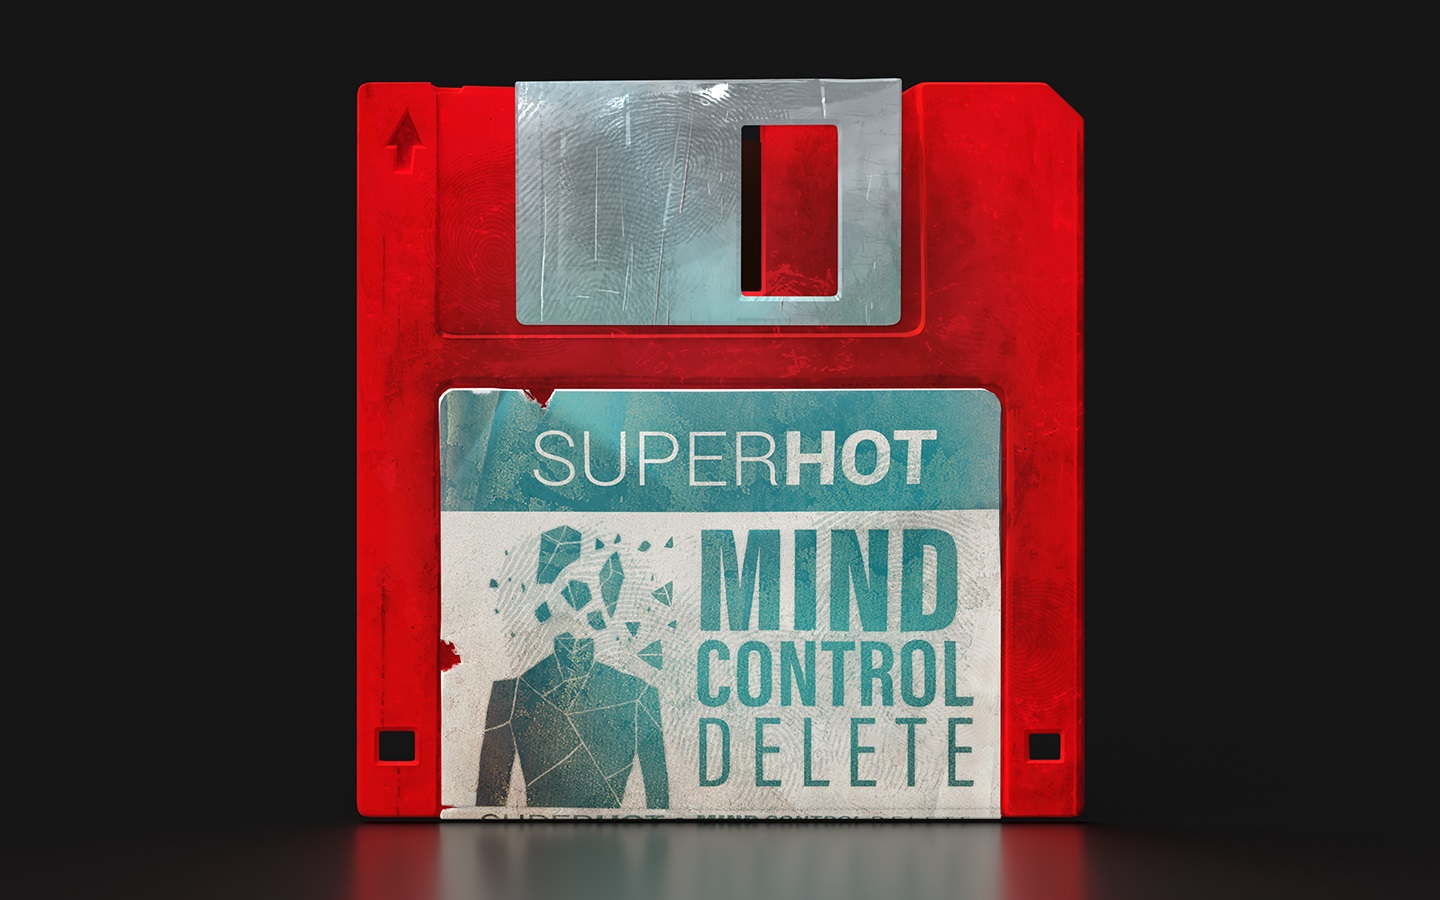 Super Hot: Mind Control Delete